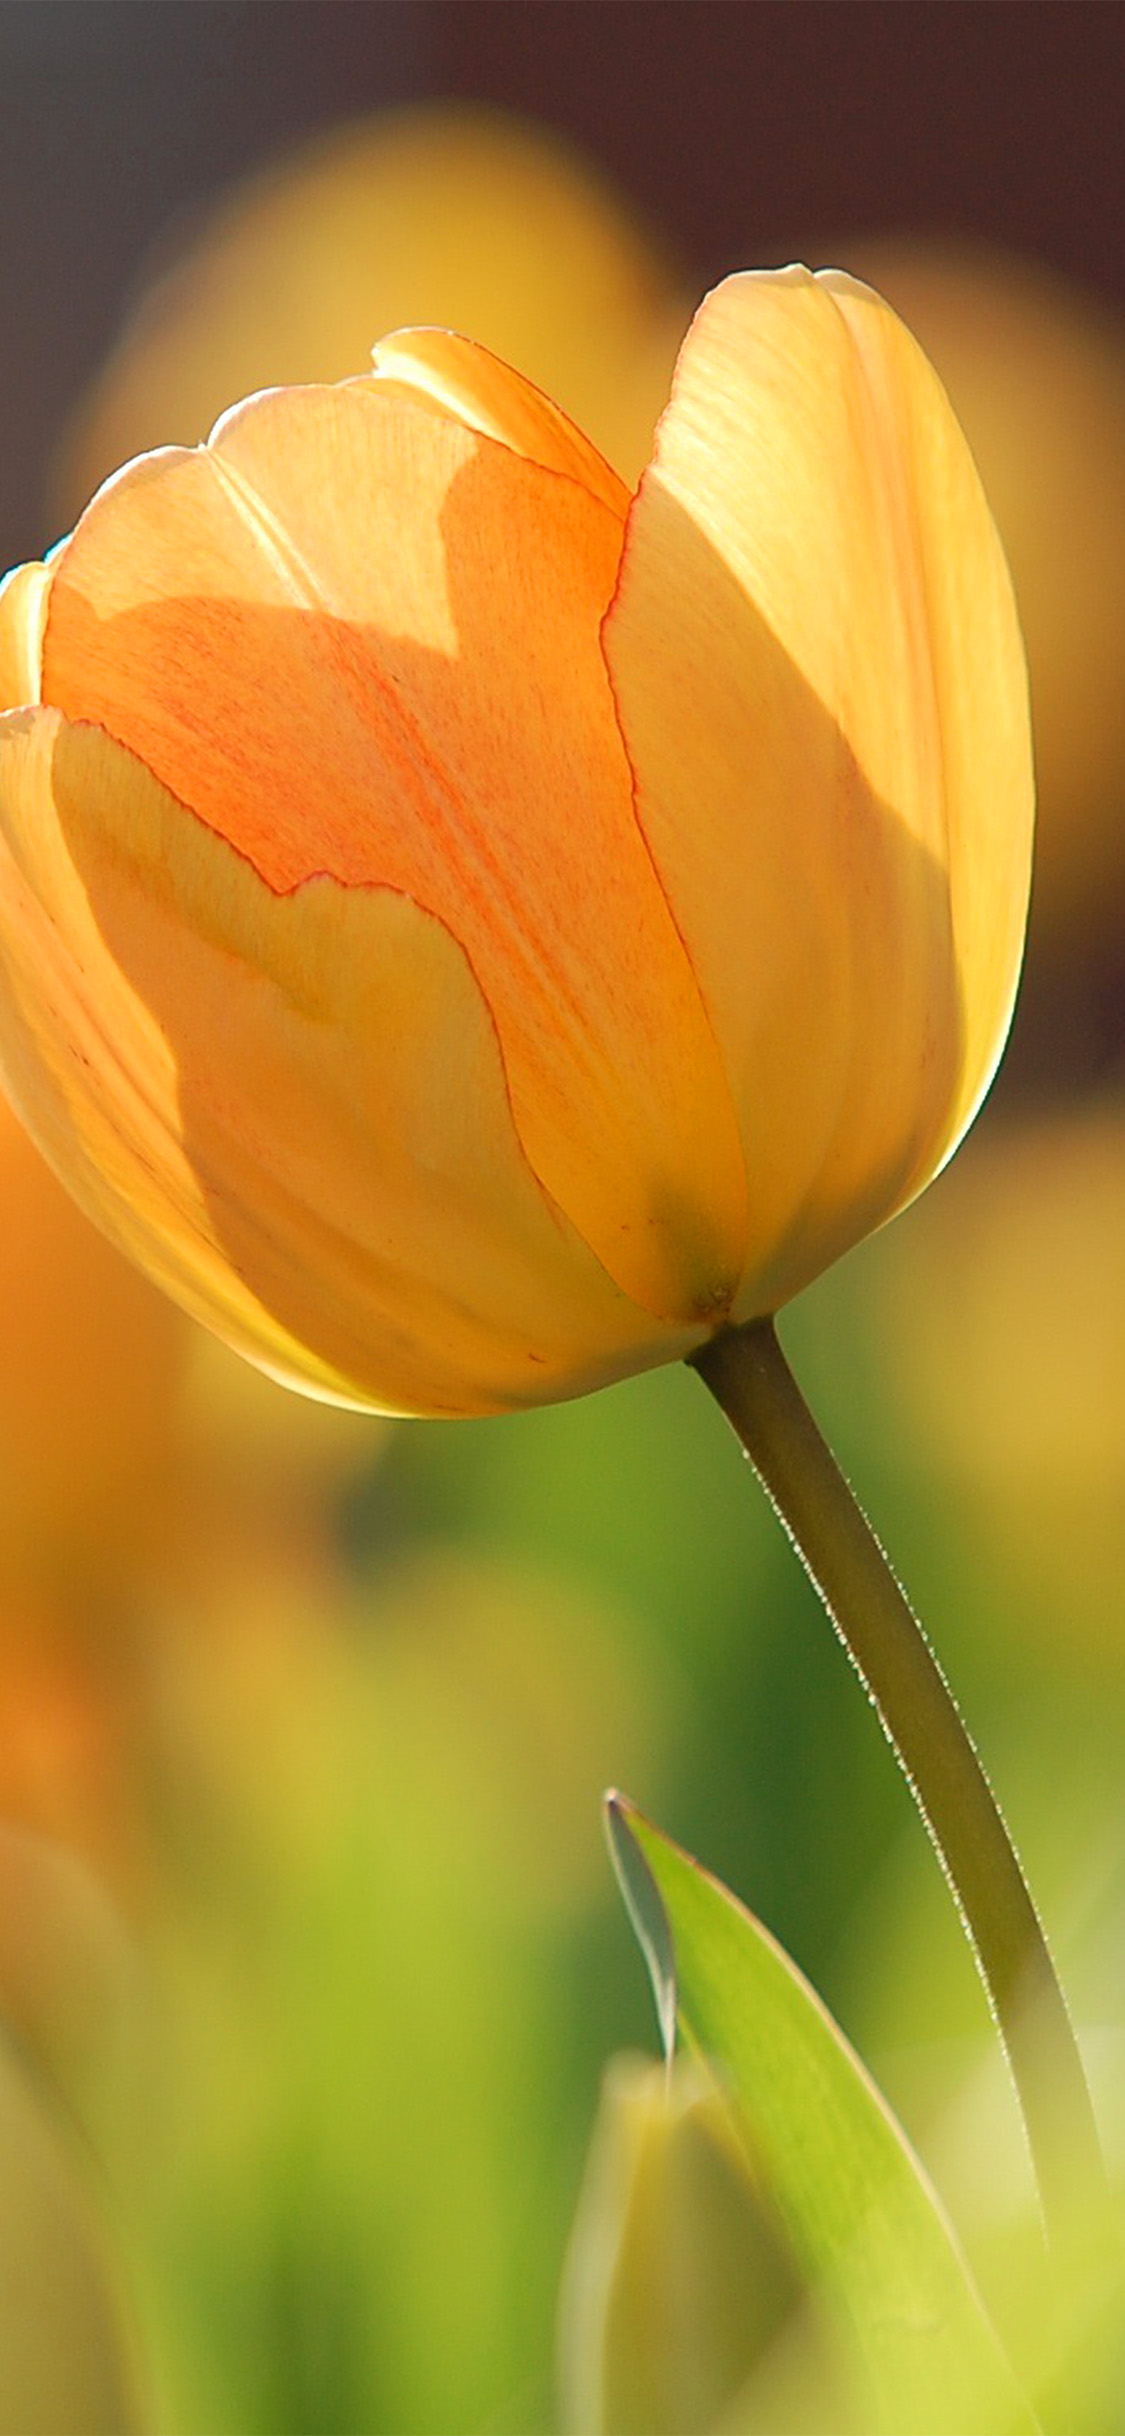 iPhone X wallpaper. flower spring tulip orange nature